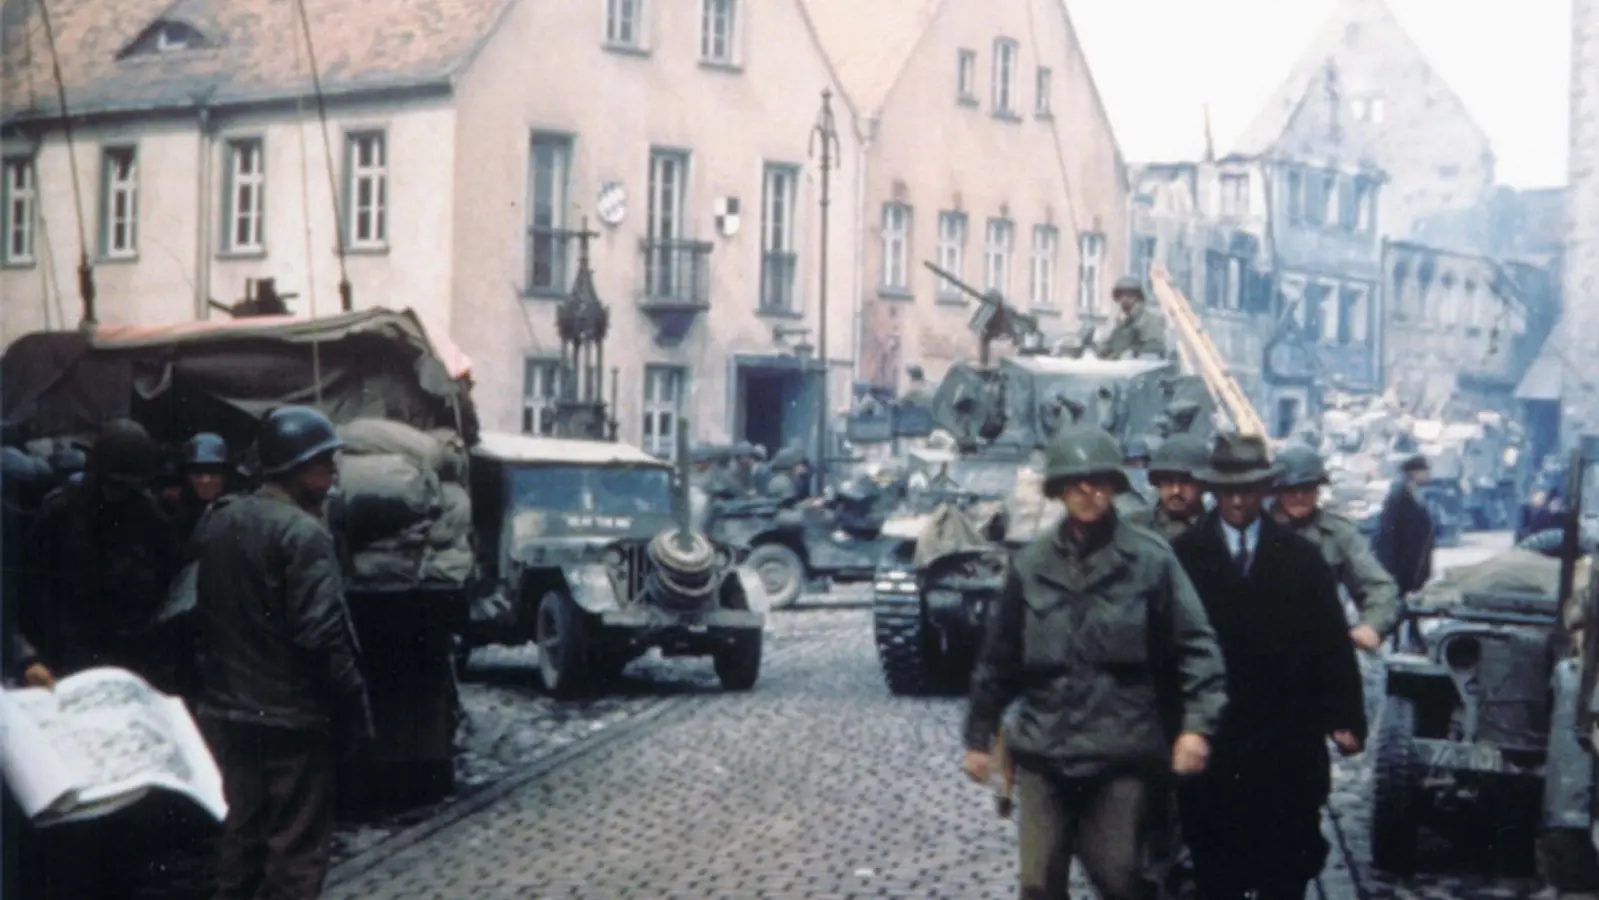 Bürgermeister Georg Schiller (rechts vorne, mit Hut) geht am 19. April 1945 mit drei US-Soldaten durch die Stadt: Diese Szene hielt ein Amerikaner mit der Kamera fest. Aus einem Archiv in den USA gelangte dieses bislang unbekannte Foto unlängst nach Leutershausen. (Foto: Captain Raymond Ebbage)